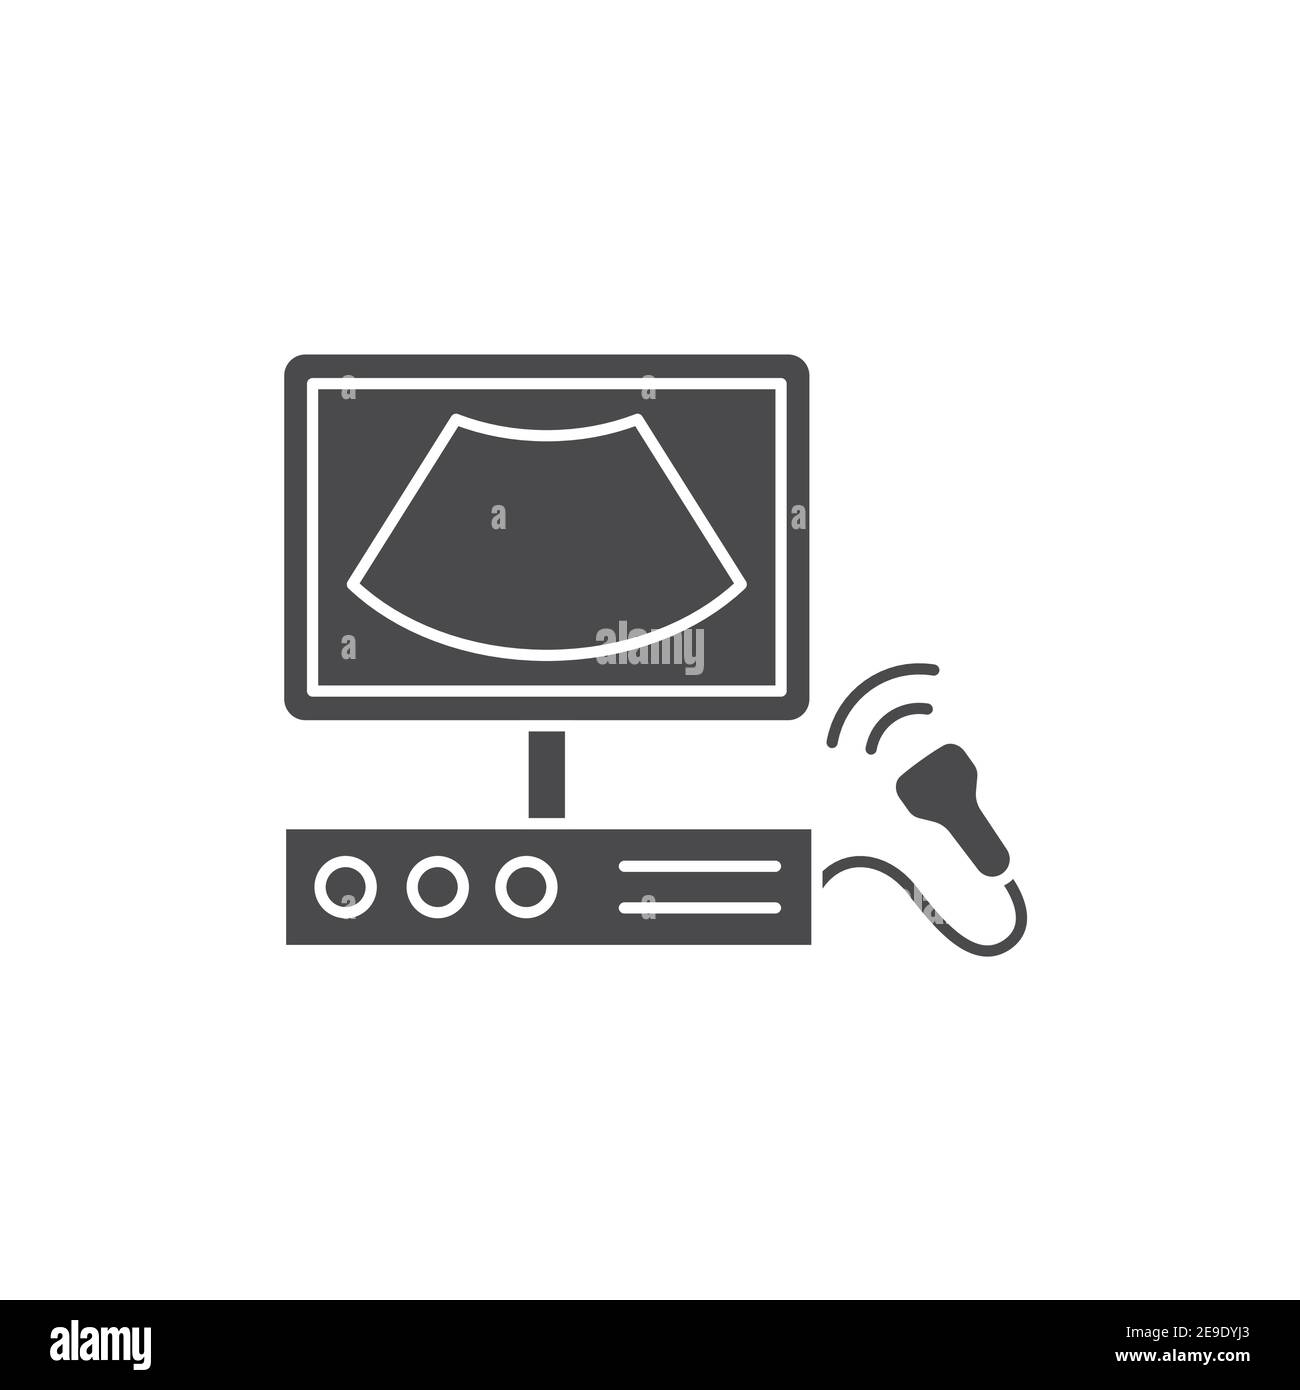 Icona glifo nera del sistema diagnostico a ultrasuoni. Concetto medico e  scientifico. Diagnostica di laboratorio. Pittogramma per Web, app mobile,  promo. UI UX des Immagine e Vettoriale - Alamy